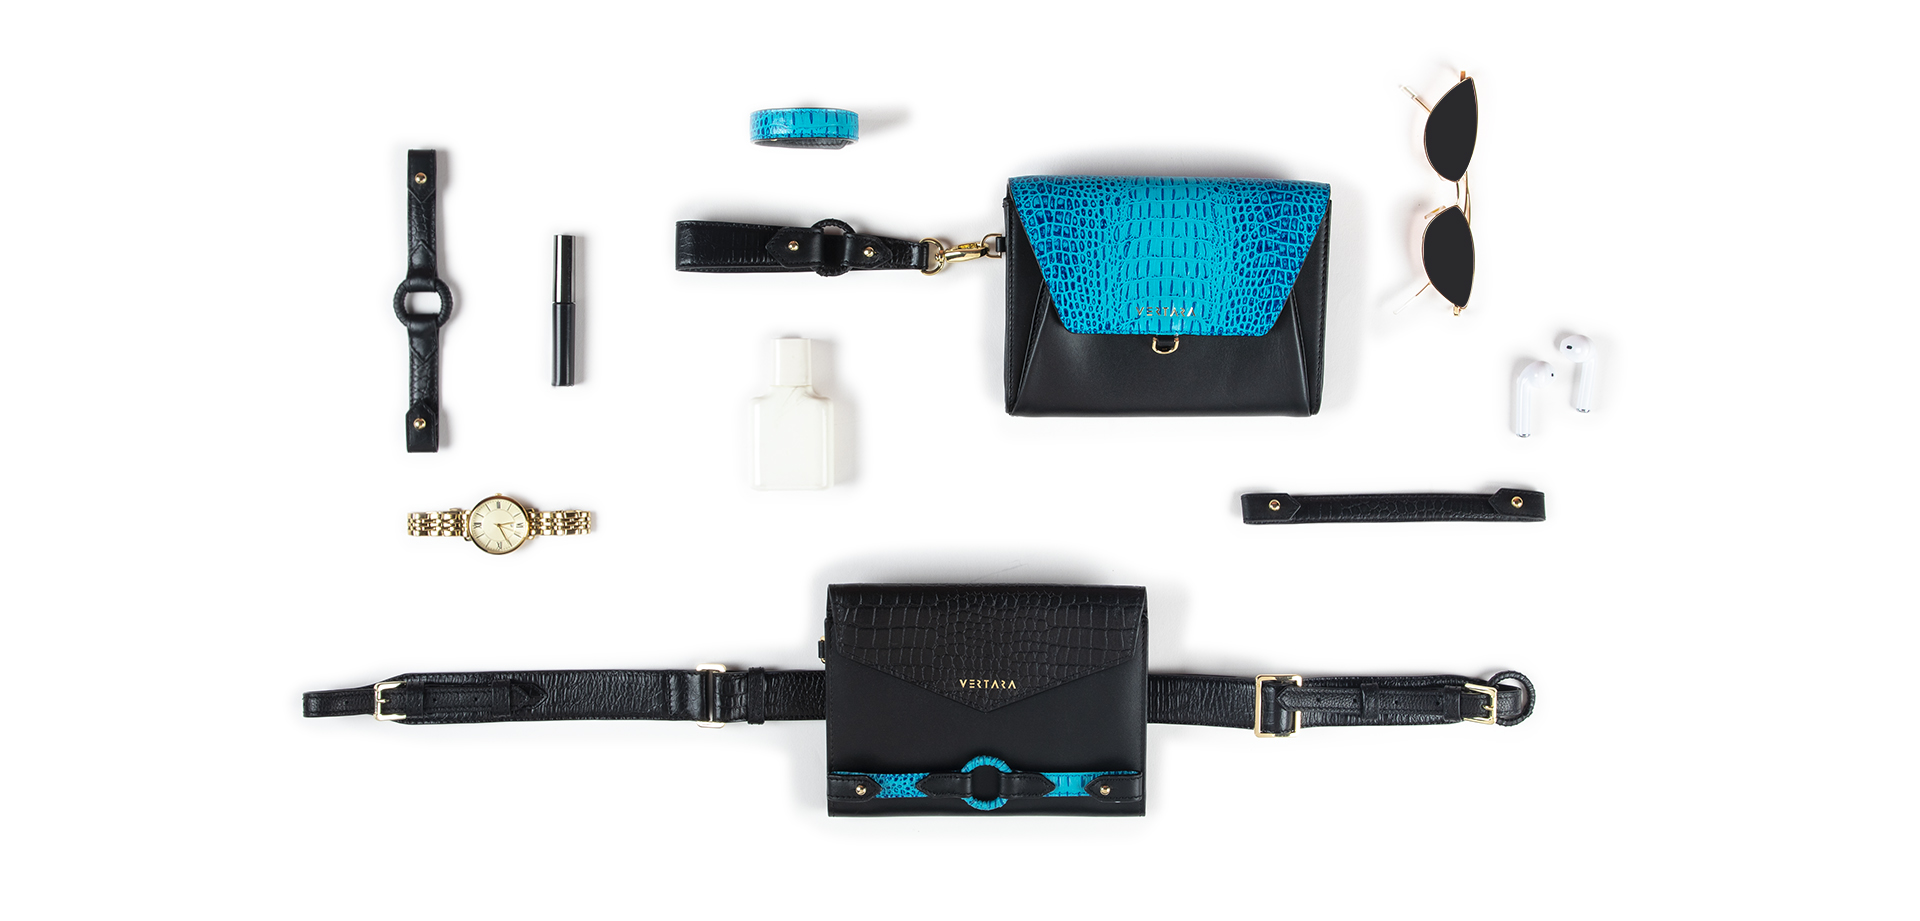 Ember Belt Bag-clutch-wallet-wristlet with Ember Bracelets in Black & Turquoise Leather fits cards, cash & phone.